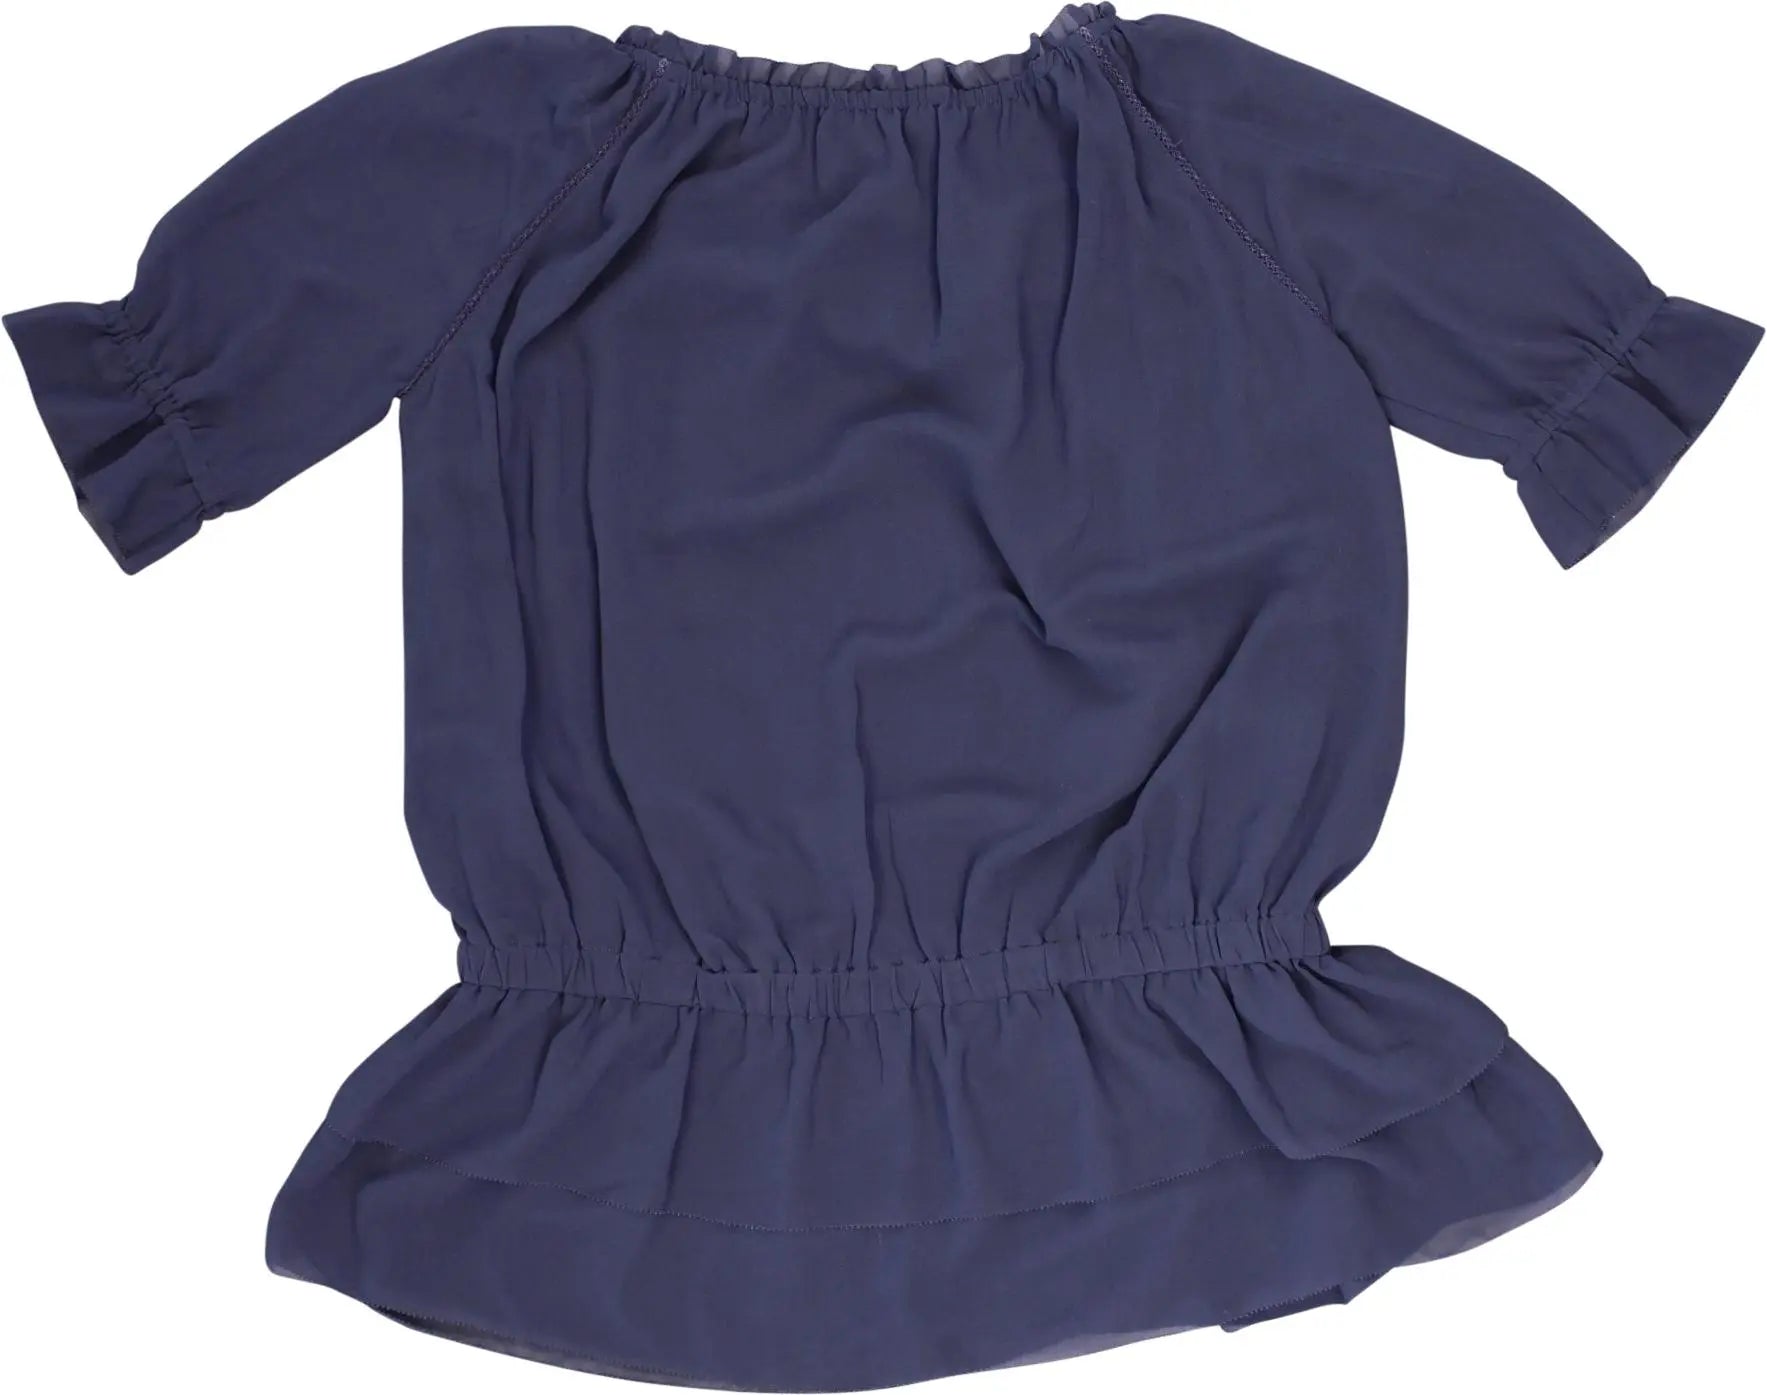 Supertrash - BLUE0070- ThriftTale.com - Vintage and second handclothing